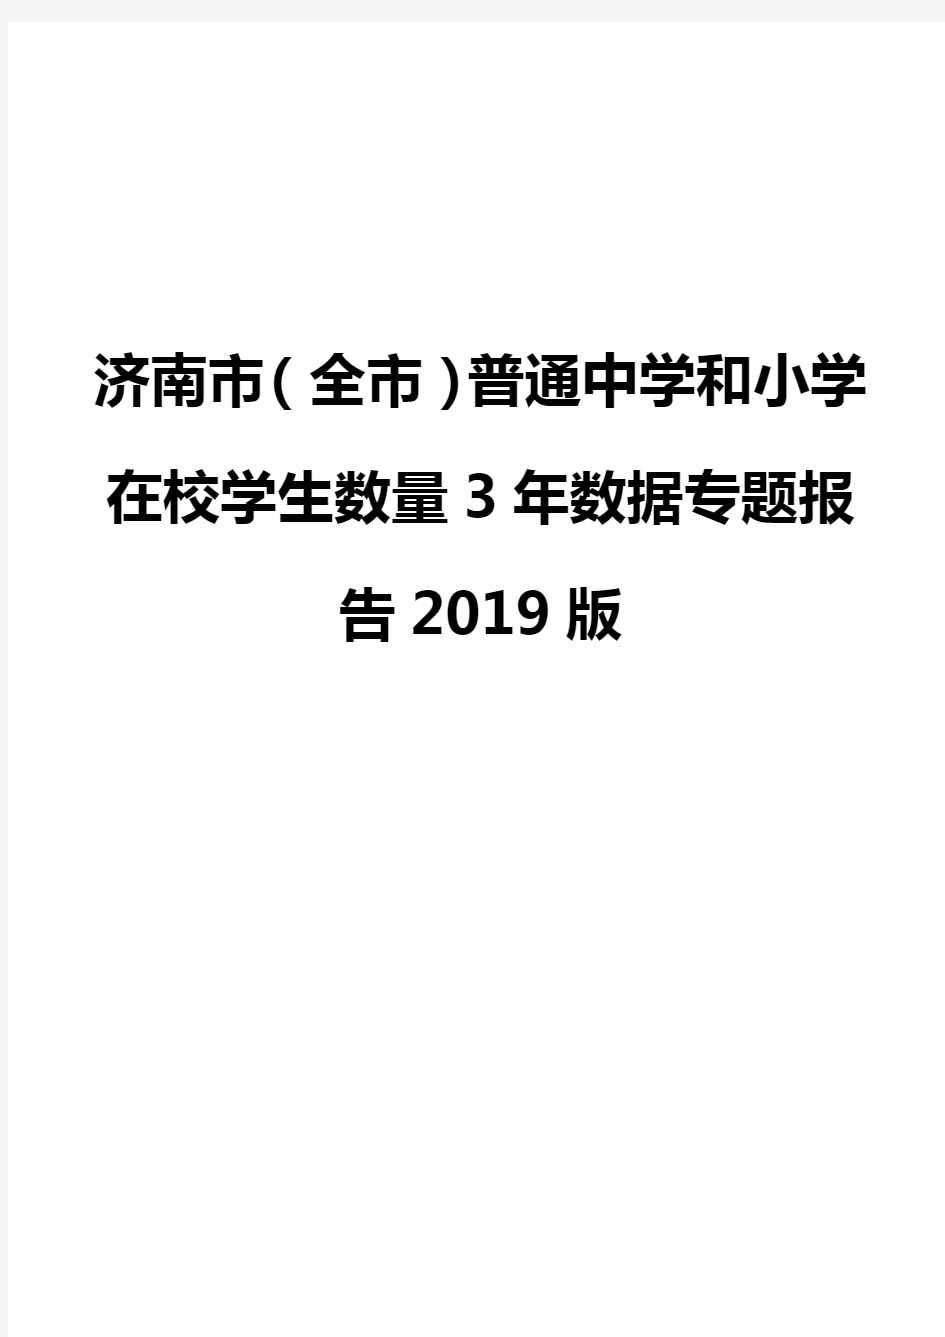 济南市(全市)普通中学和小学在校学生数量3年数据专题报告2019版